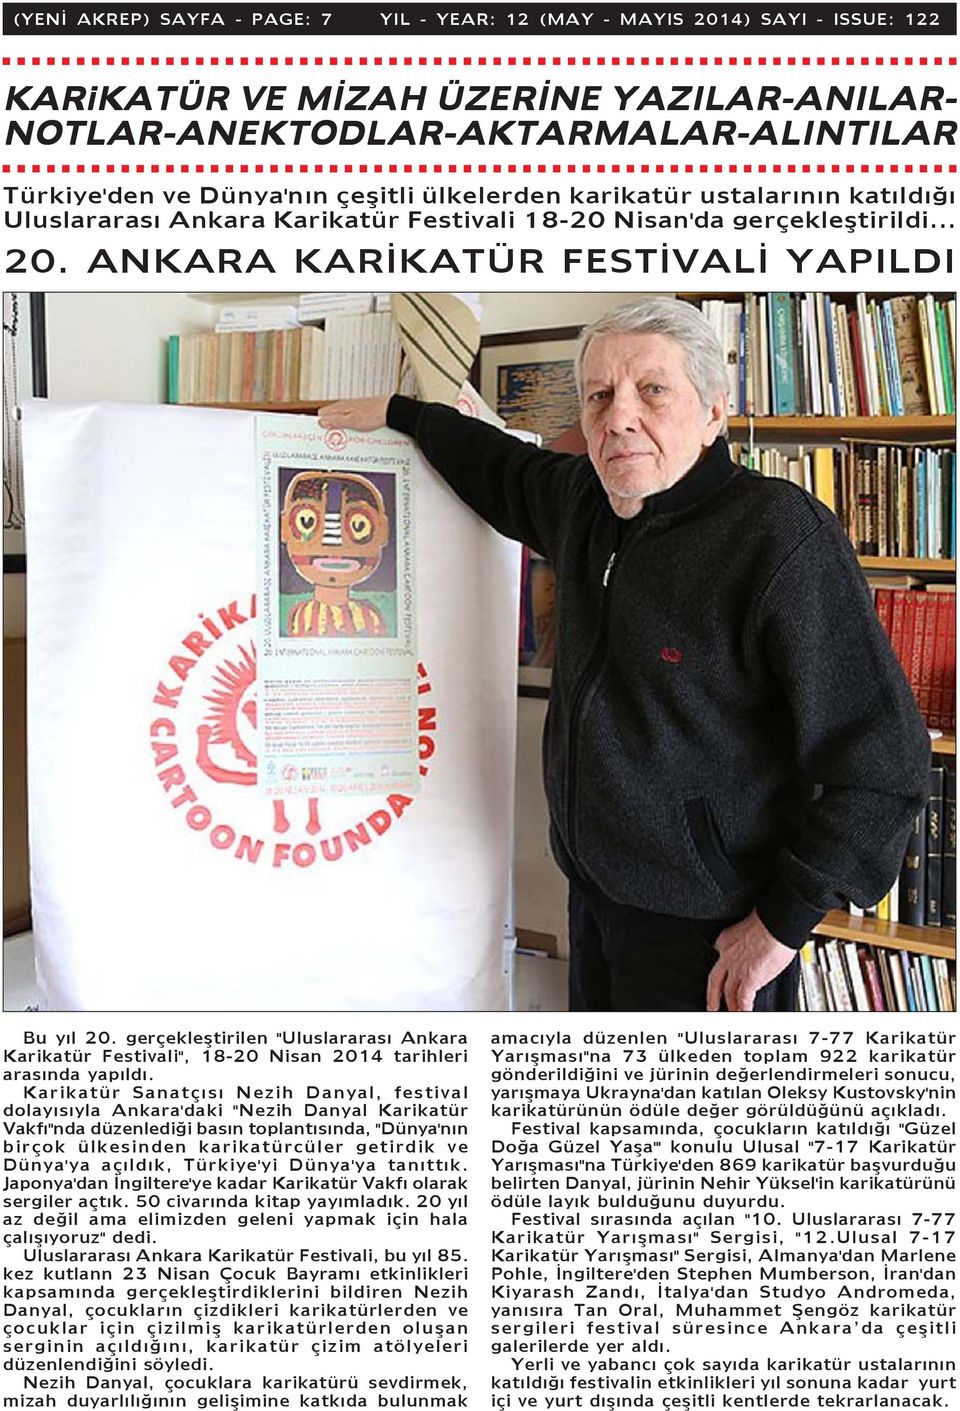 gerçekleþtirilen "Uluslararasý Ankara Karikatür Festivali", 18-20 Nisan 2014 tarihleri arasýnda yapýldý.